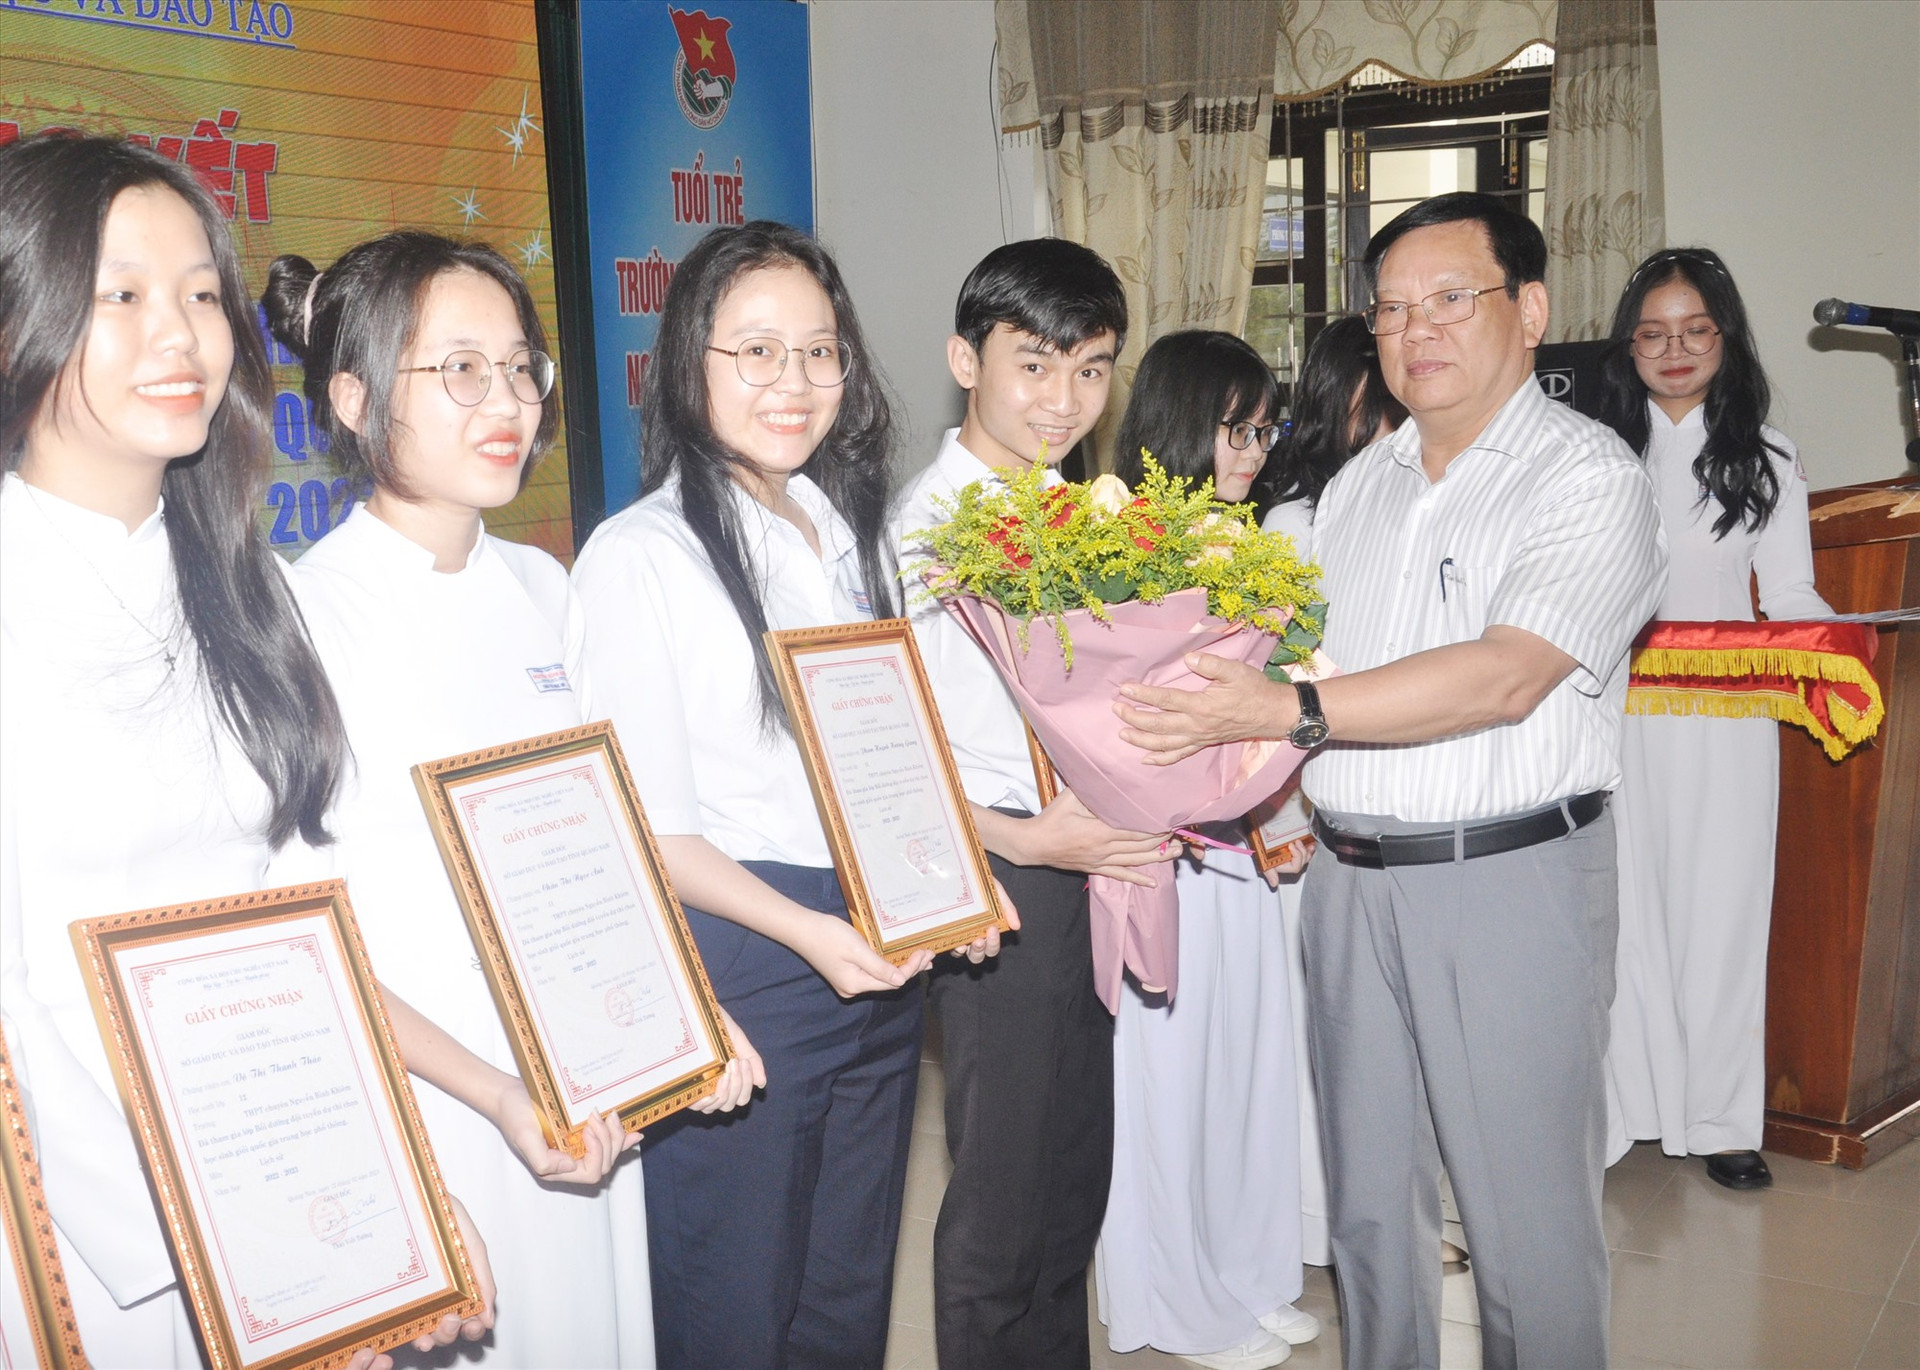 Giám đốc Sở GD-ĐT Thái Viết Tường tặng hoa động viên học sinh thi đạt kết quả tốt. Ảnh: X.P